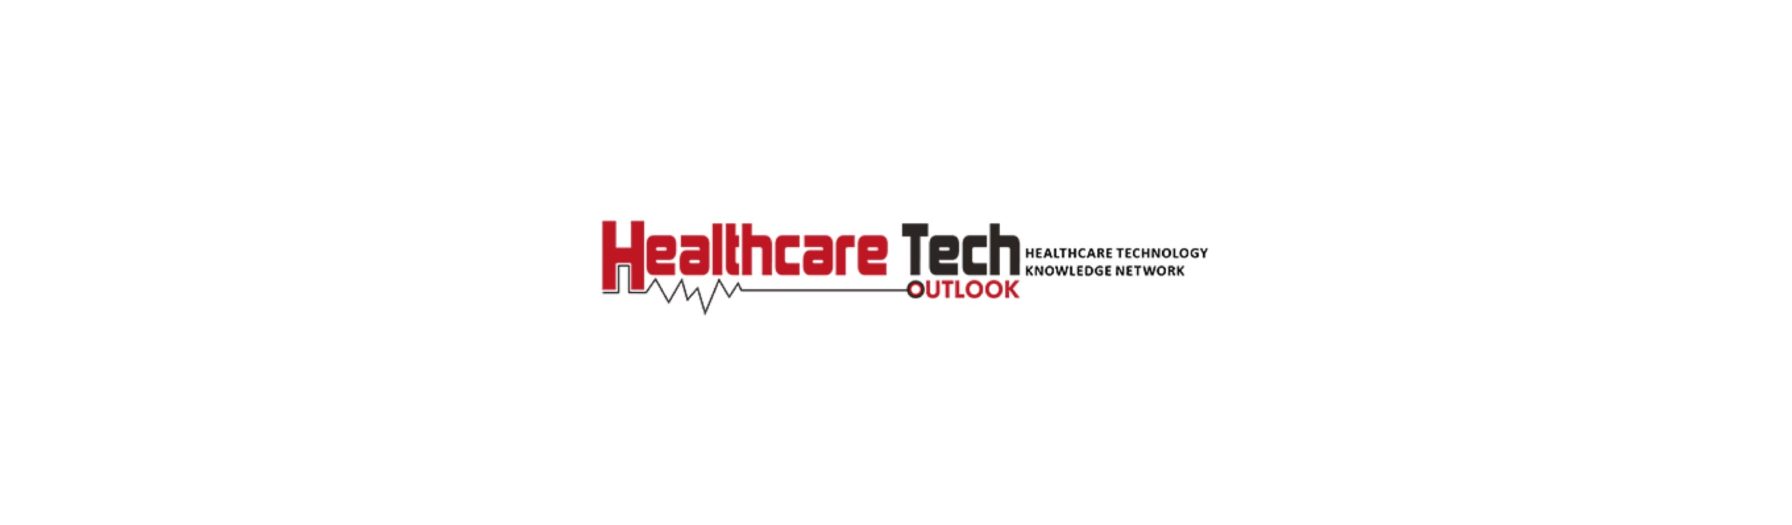  Healthcare Tech Outlook logo